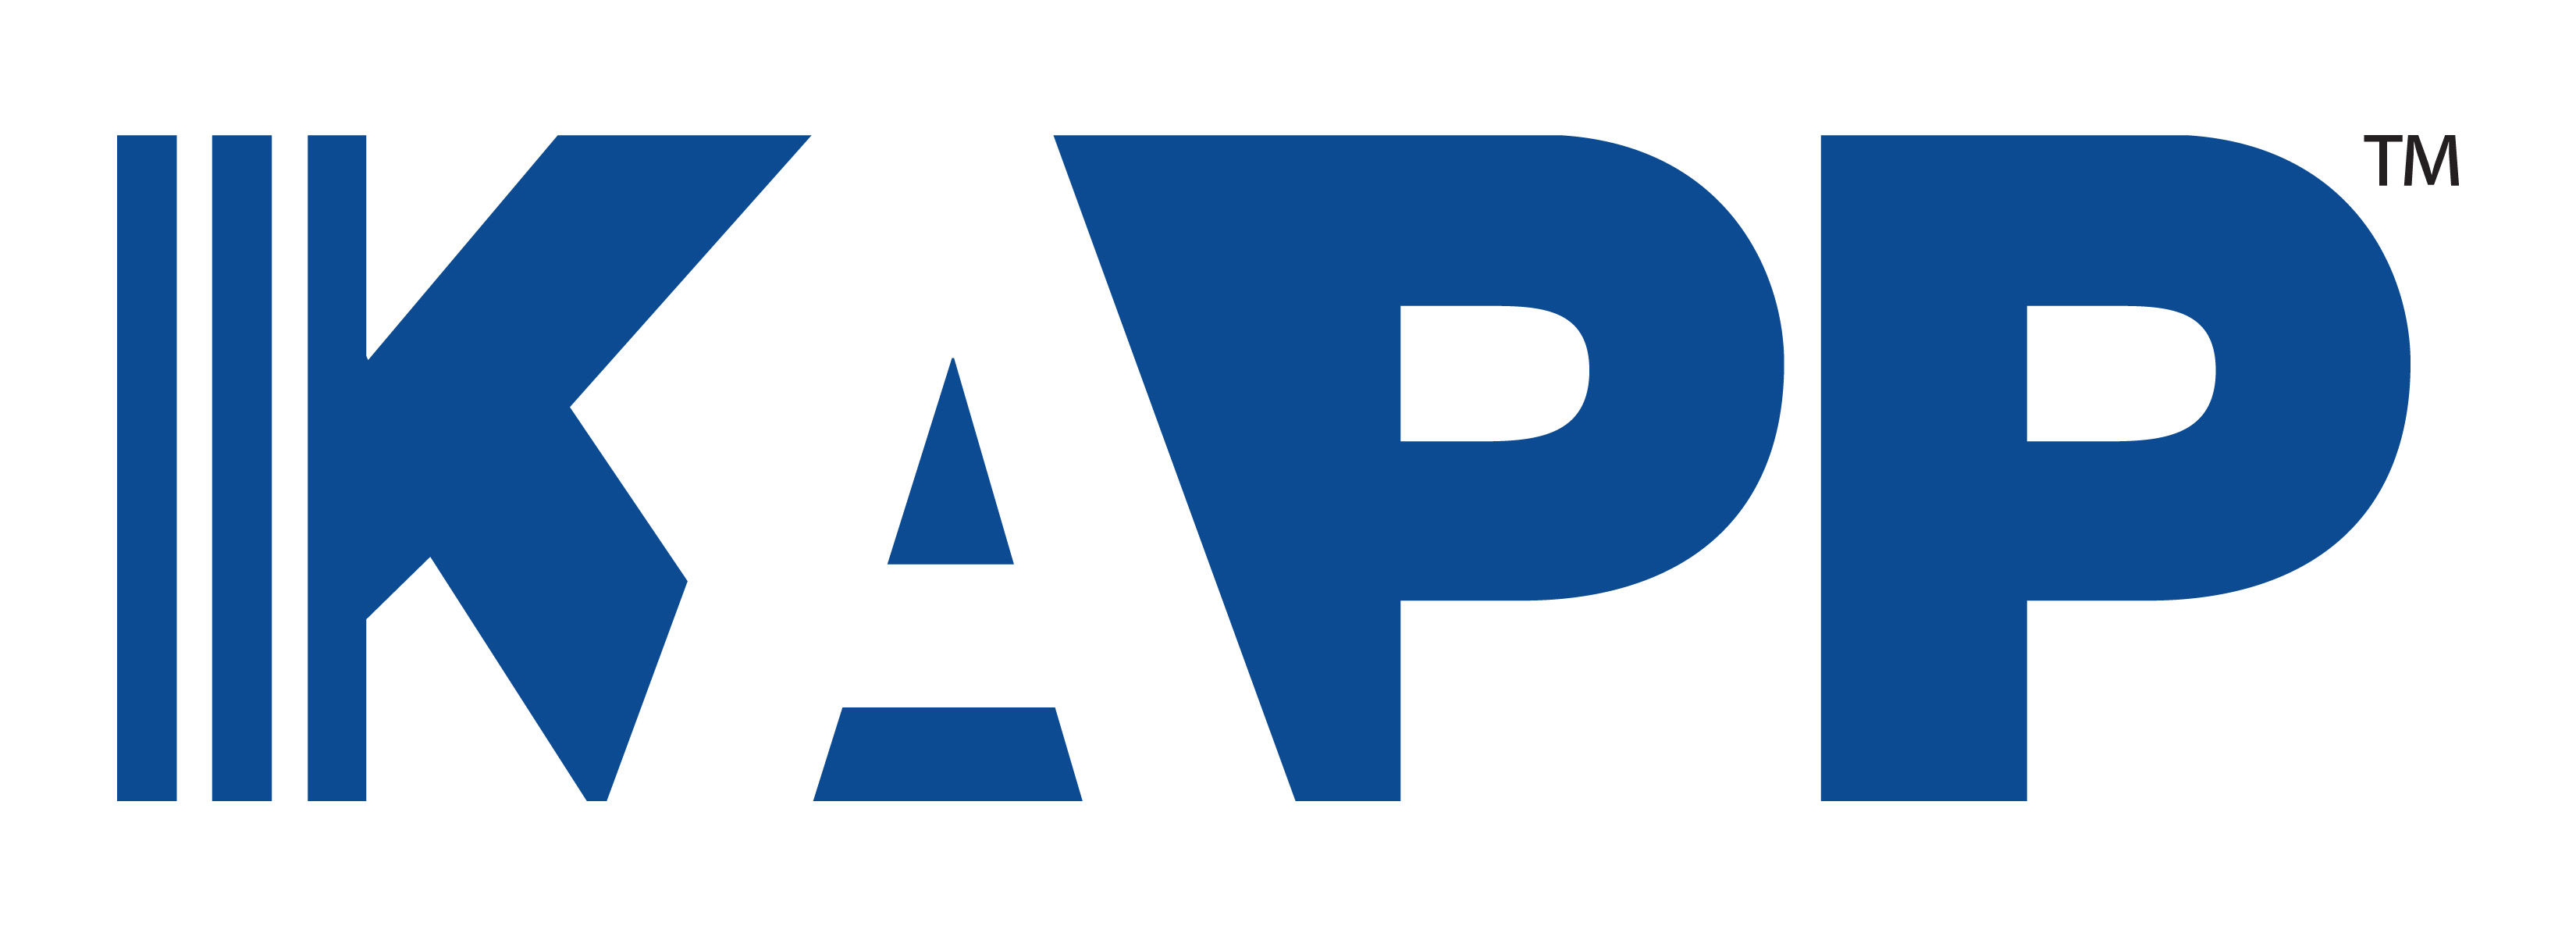 KAPP Infrastructure Inc.